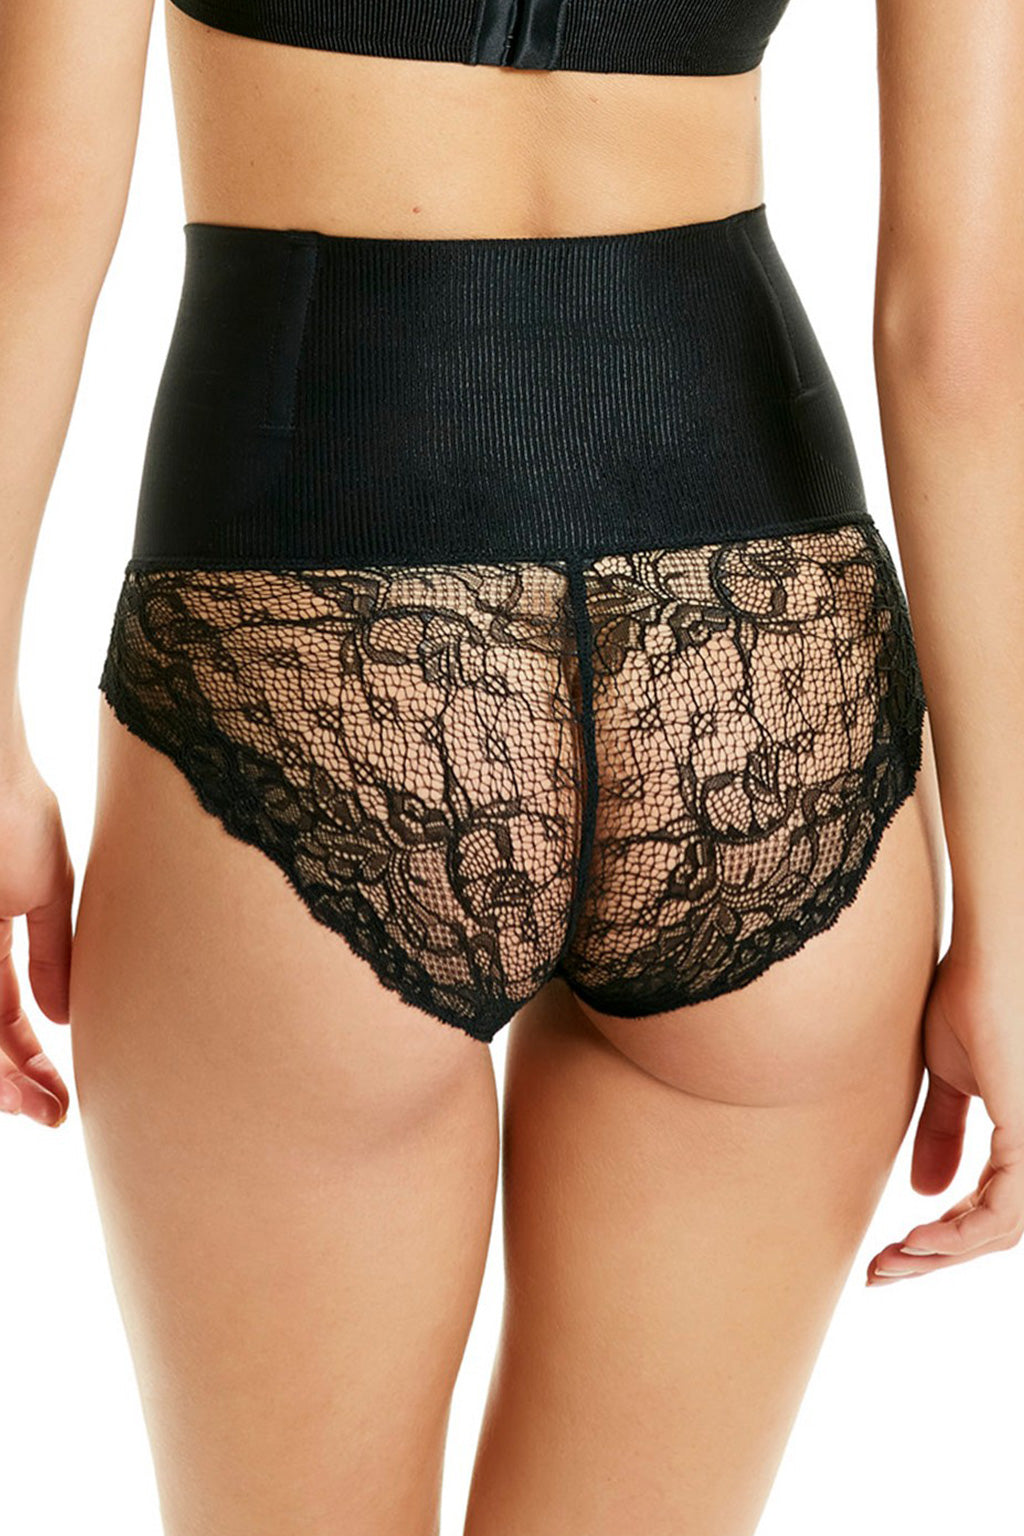 Brazilian SHADES Lace Panties Waist Corset